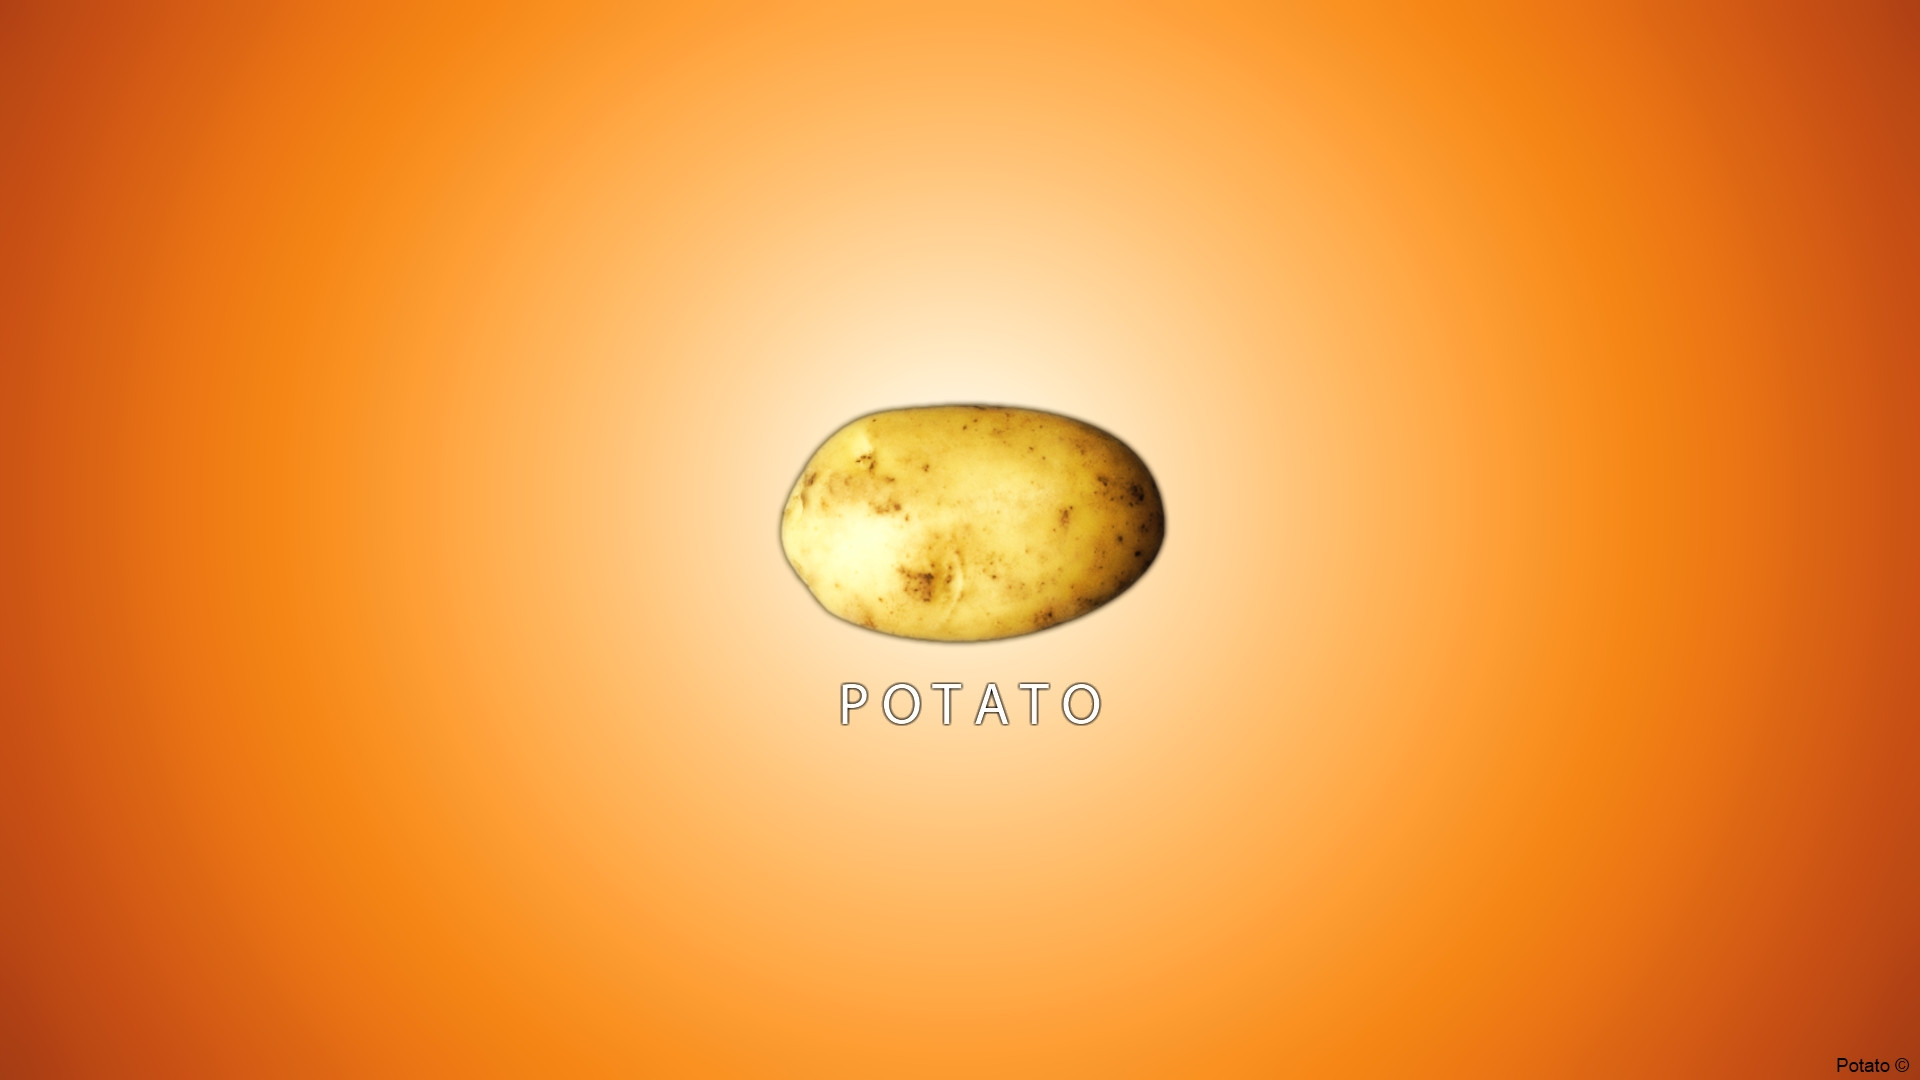 Potato X Post R Wallpaper